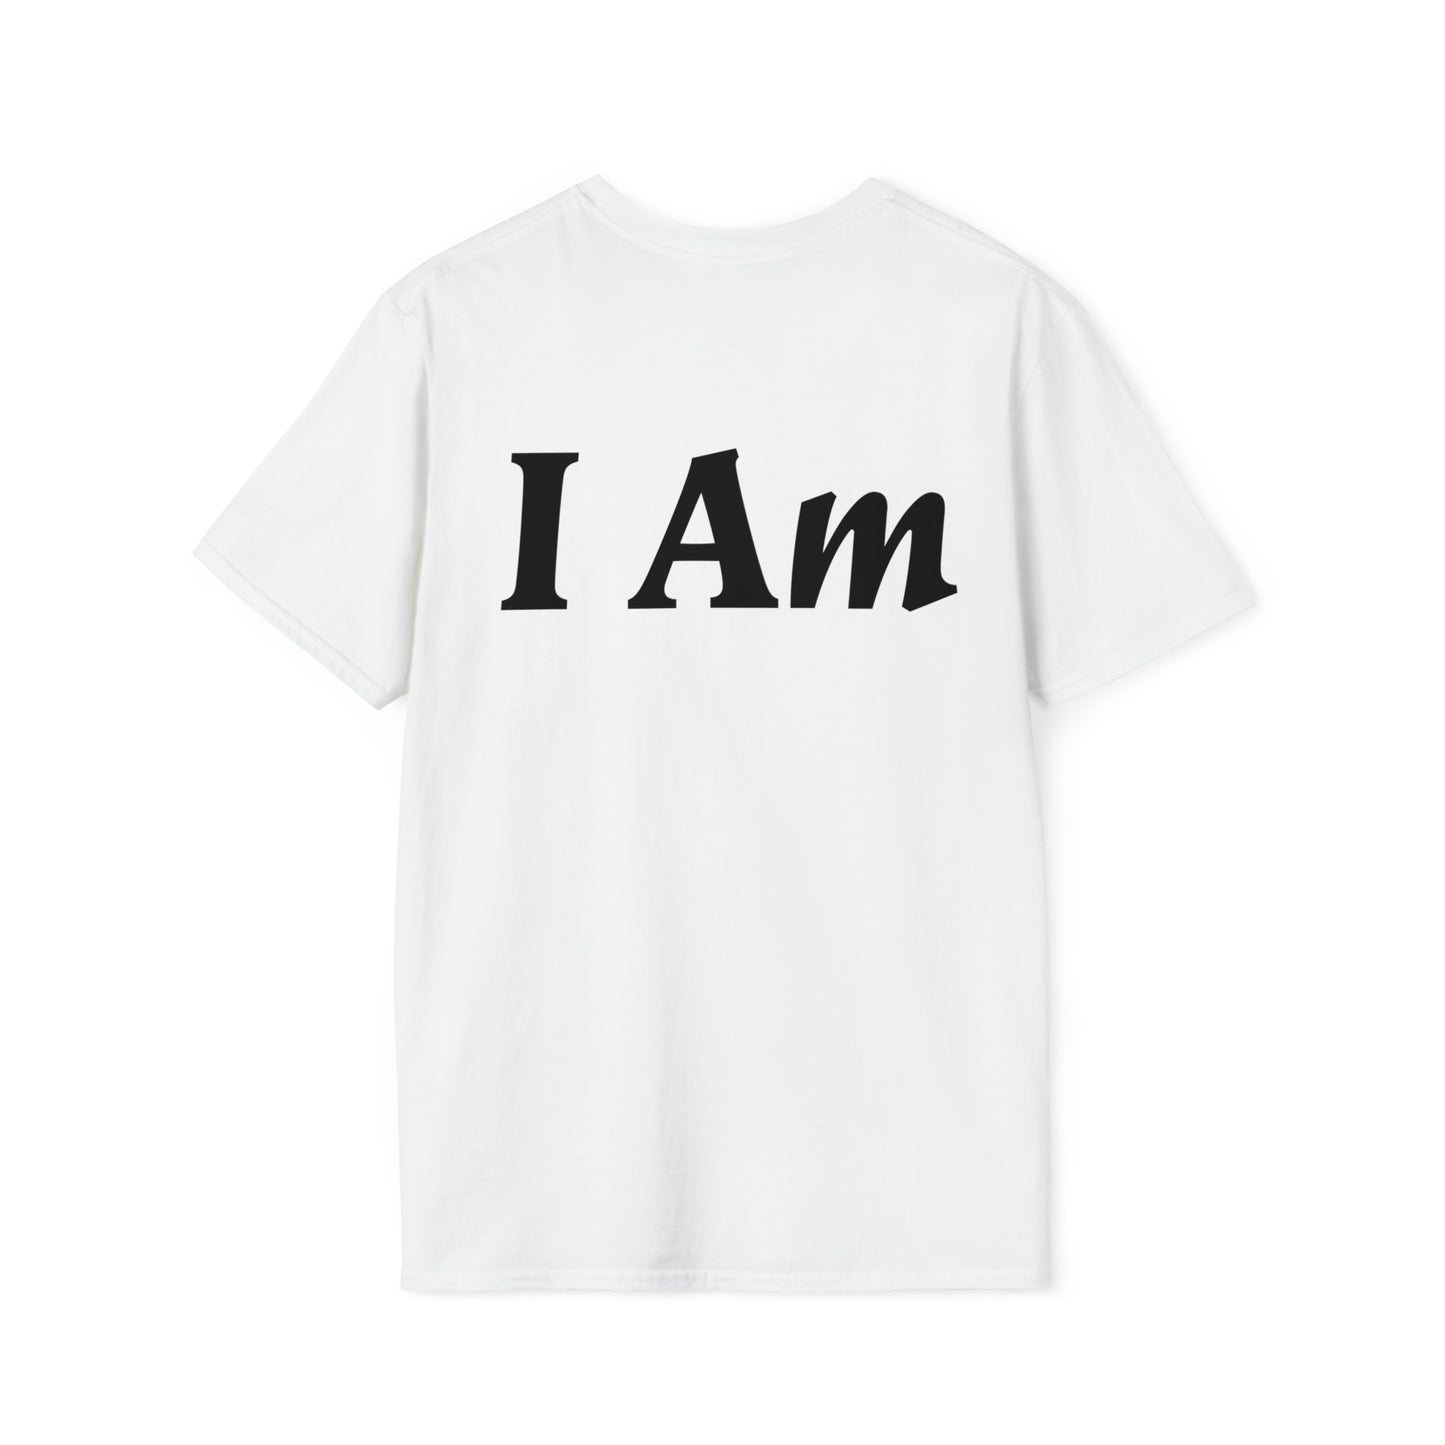 I Am T-shirt